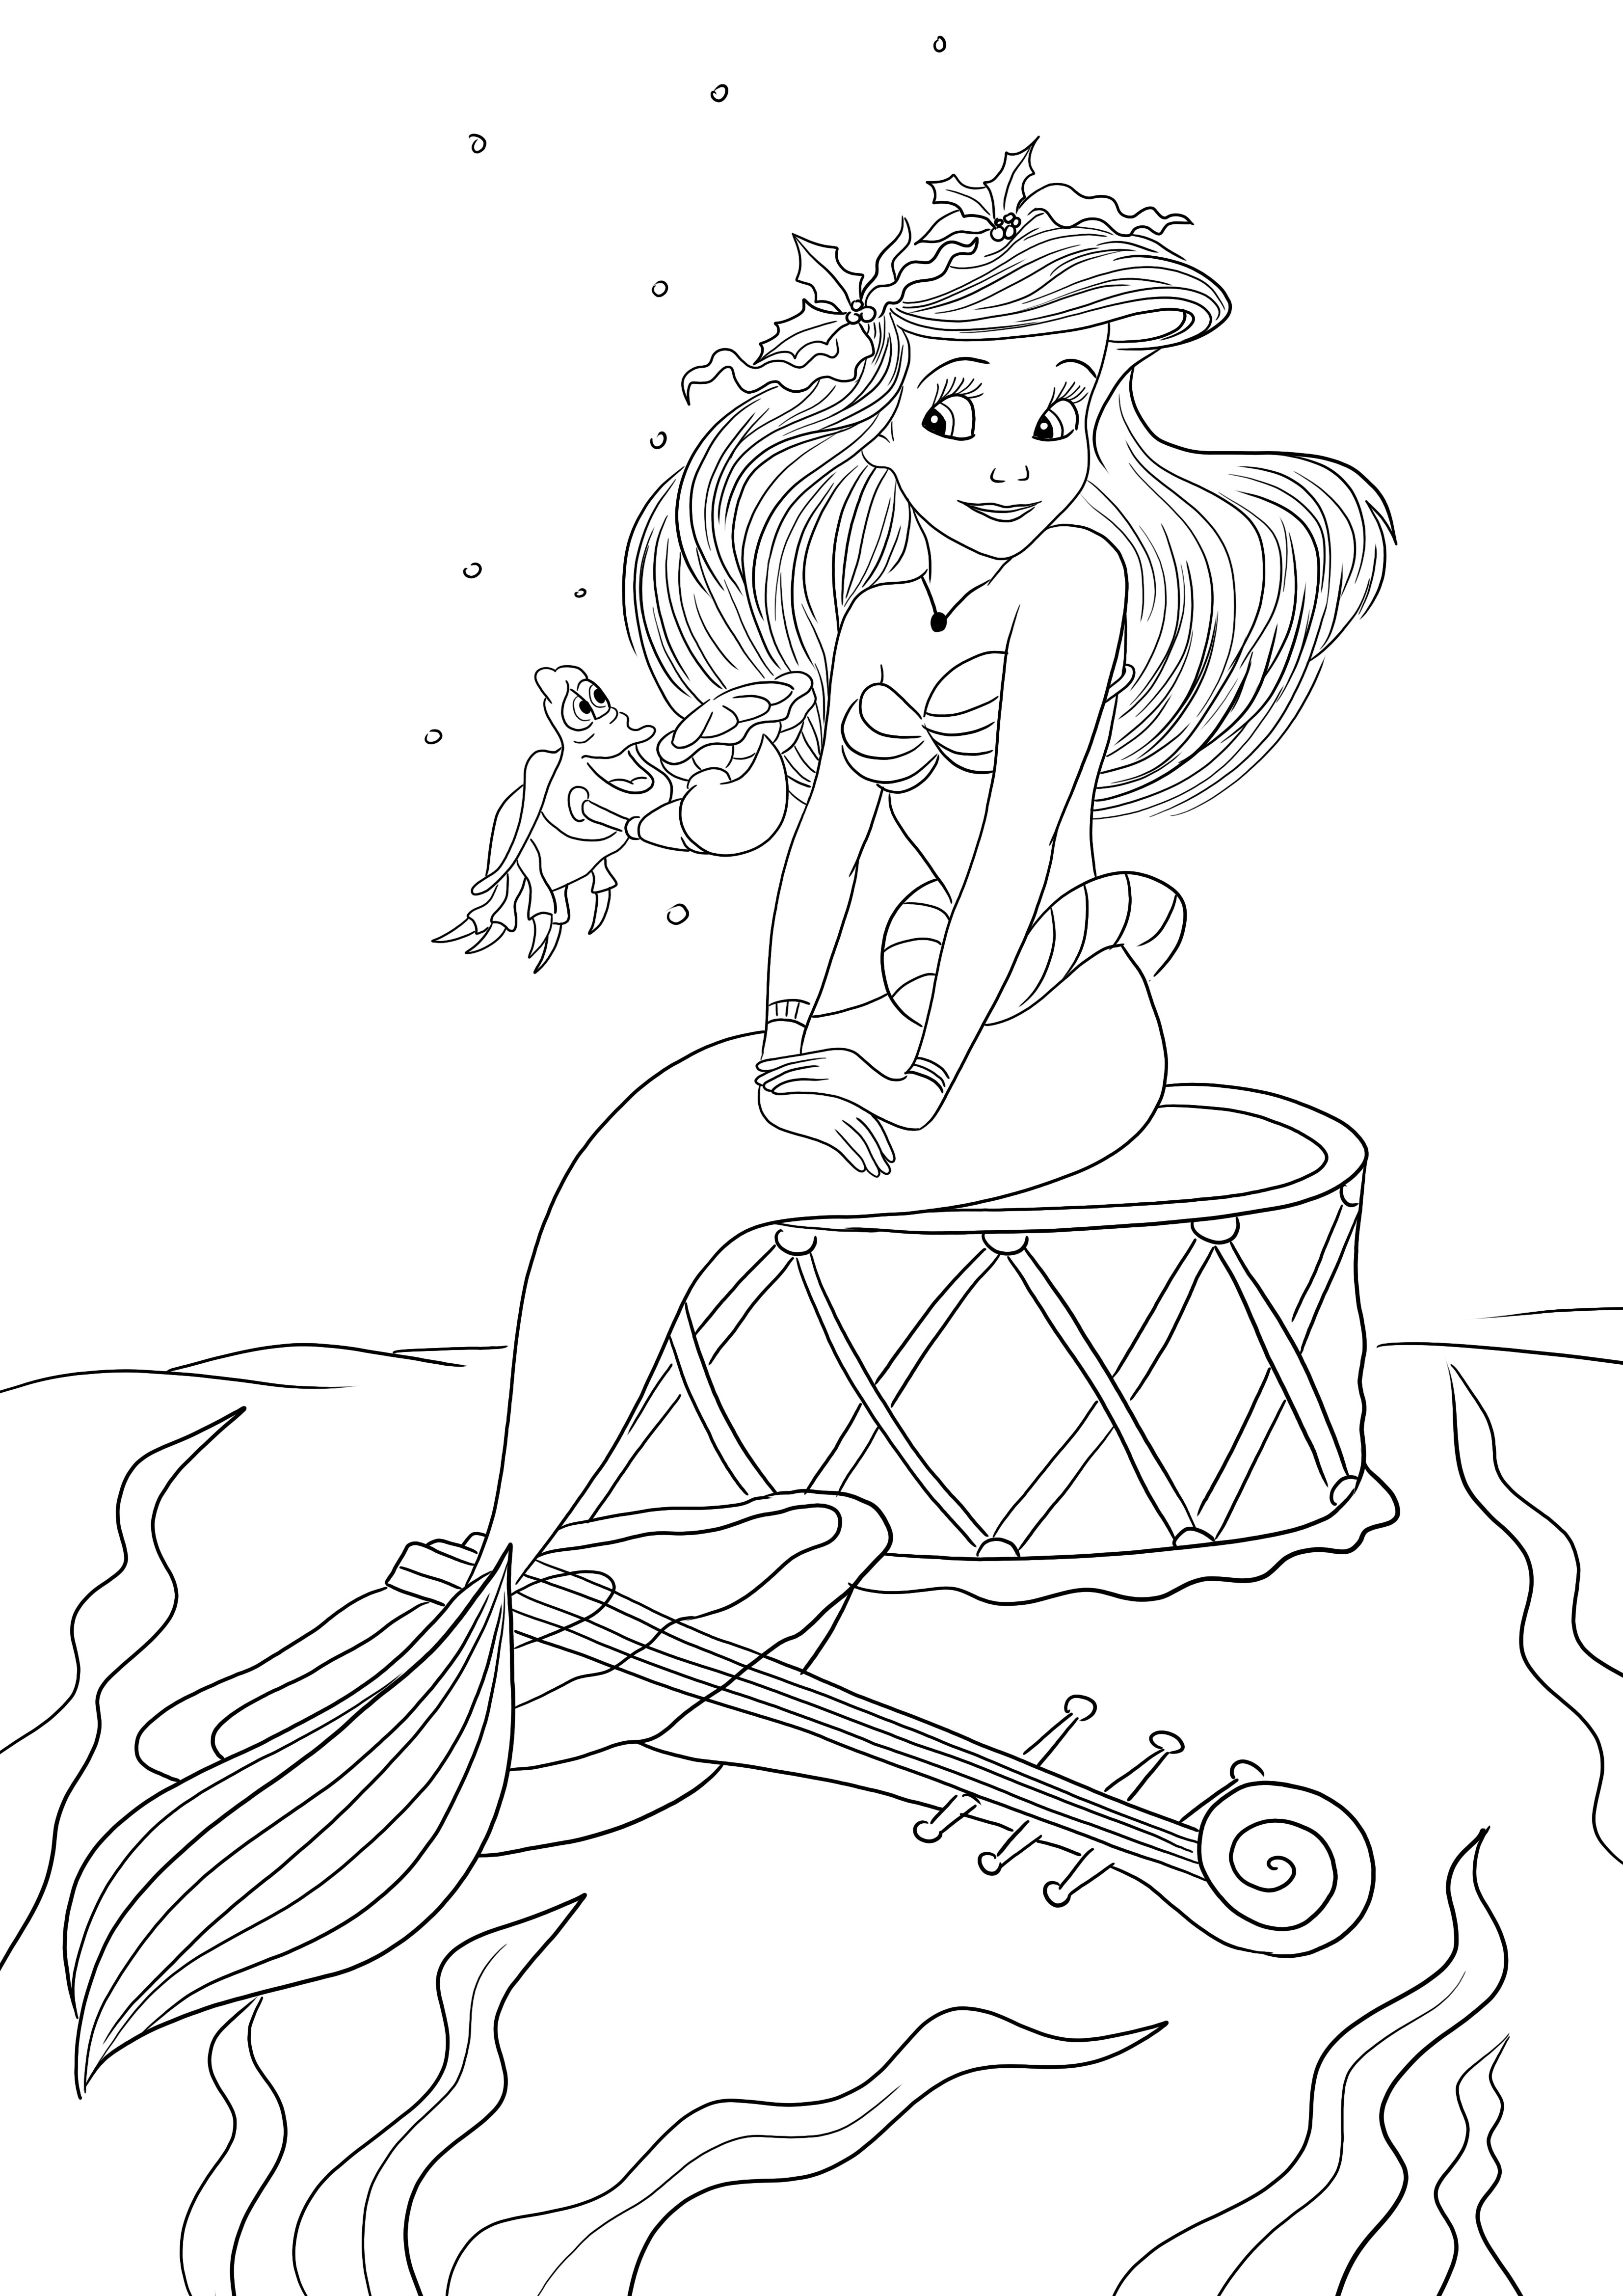 Página para colorear de Ariel la Sirena para imprimir o descargar gratis